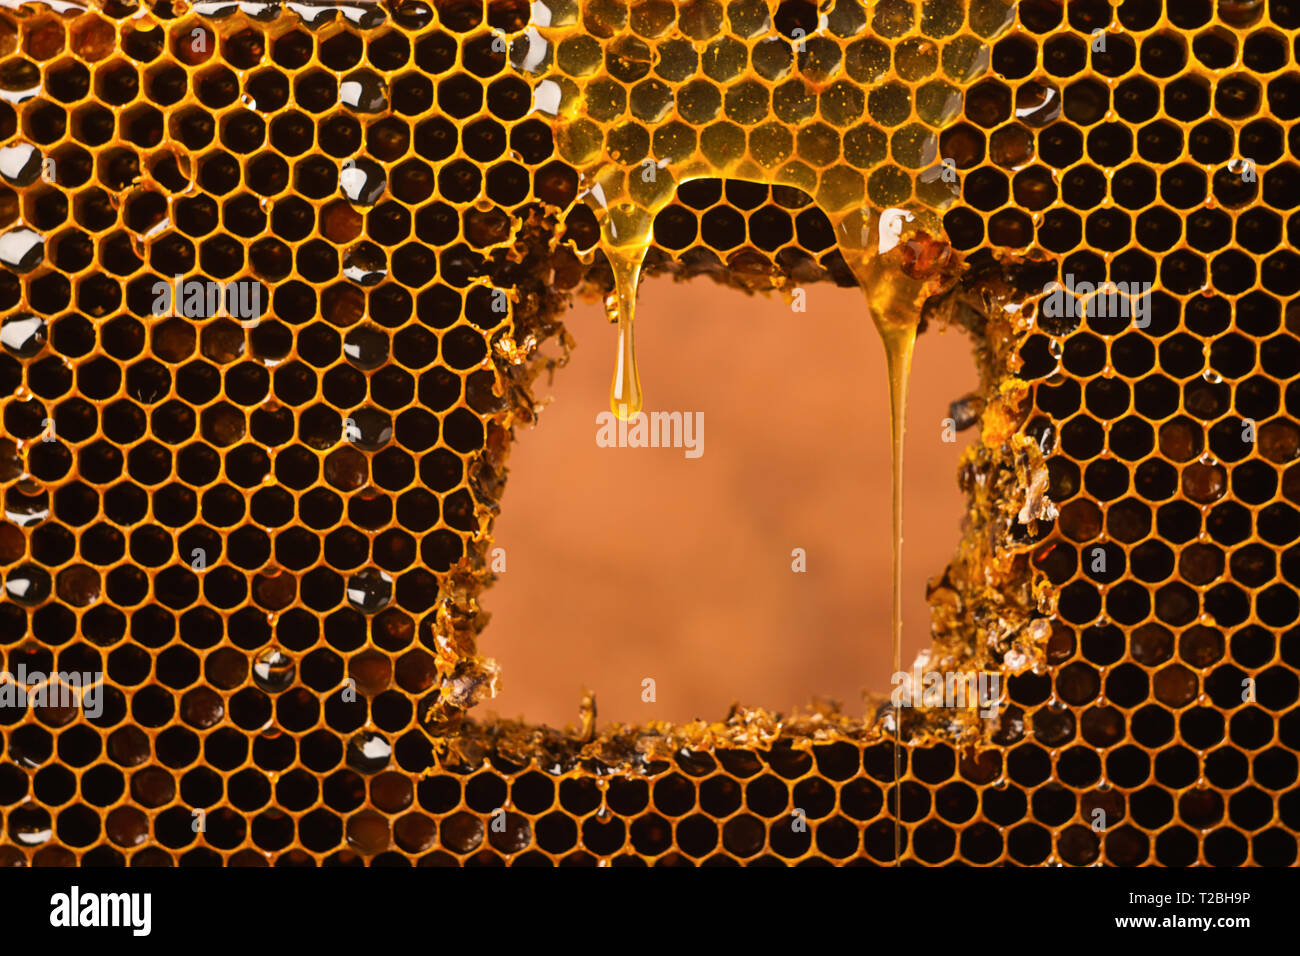 Une goutte de miel clair frais coule sur le miel. Le miel d'abeilles dans une couleur sombre. Le concept de produits sains et naturels. Le minimalisme dans l'alimentation Banque D'Images